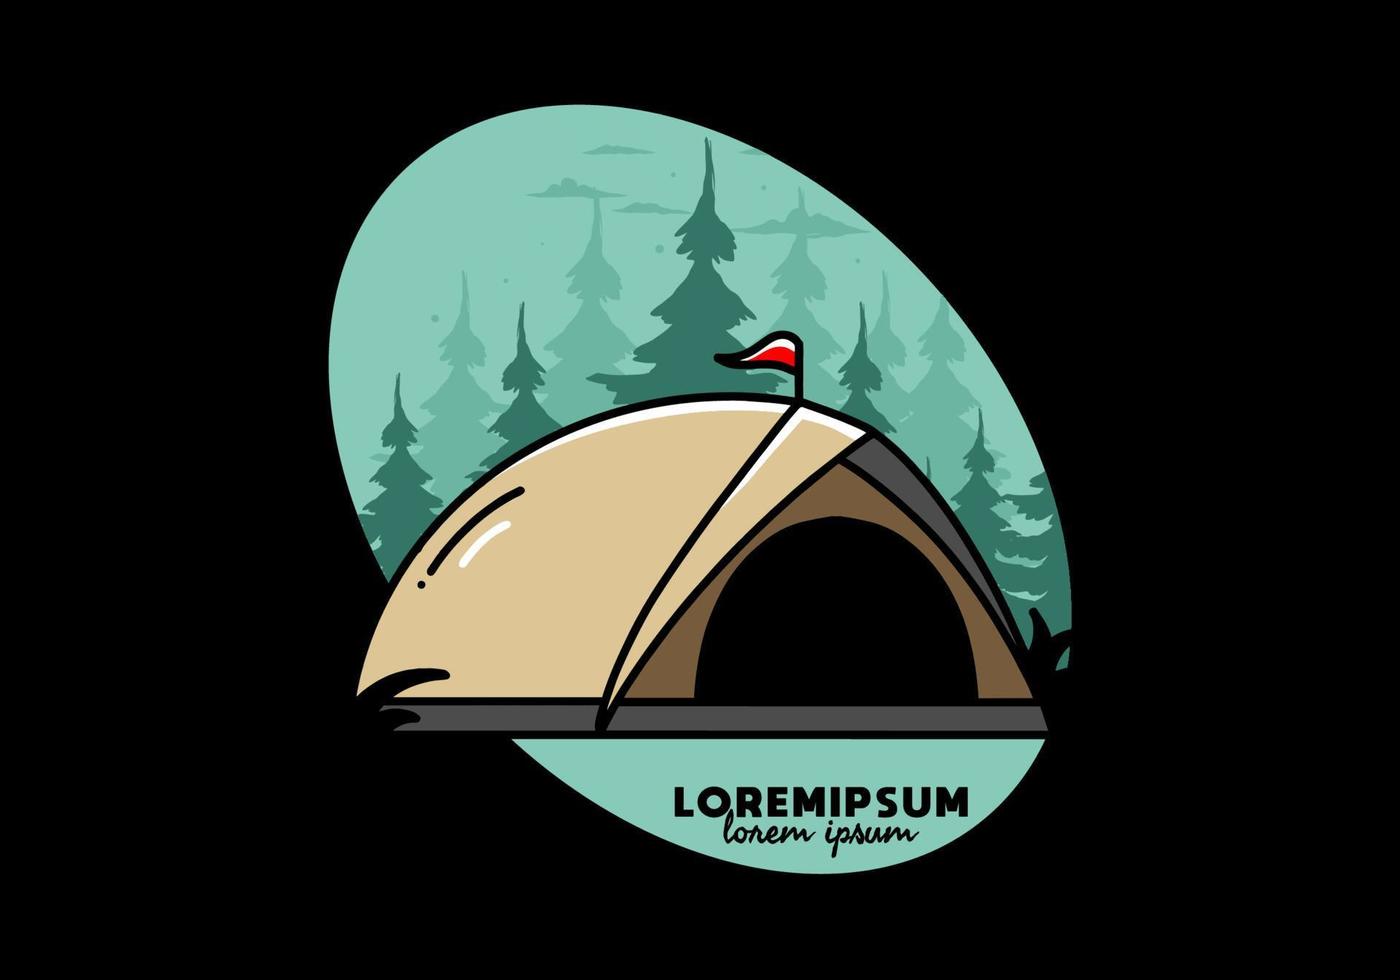 conception de badge illustration camping tente dôme vecteur